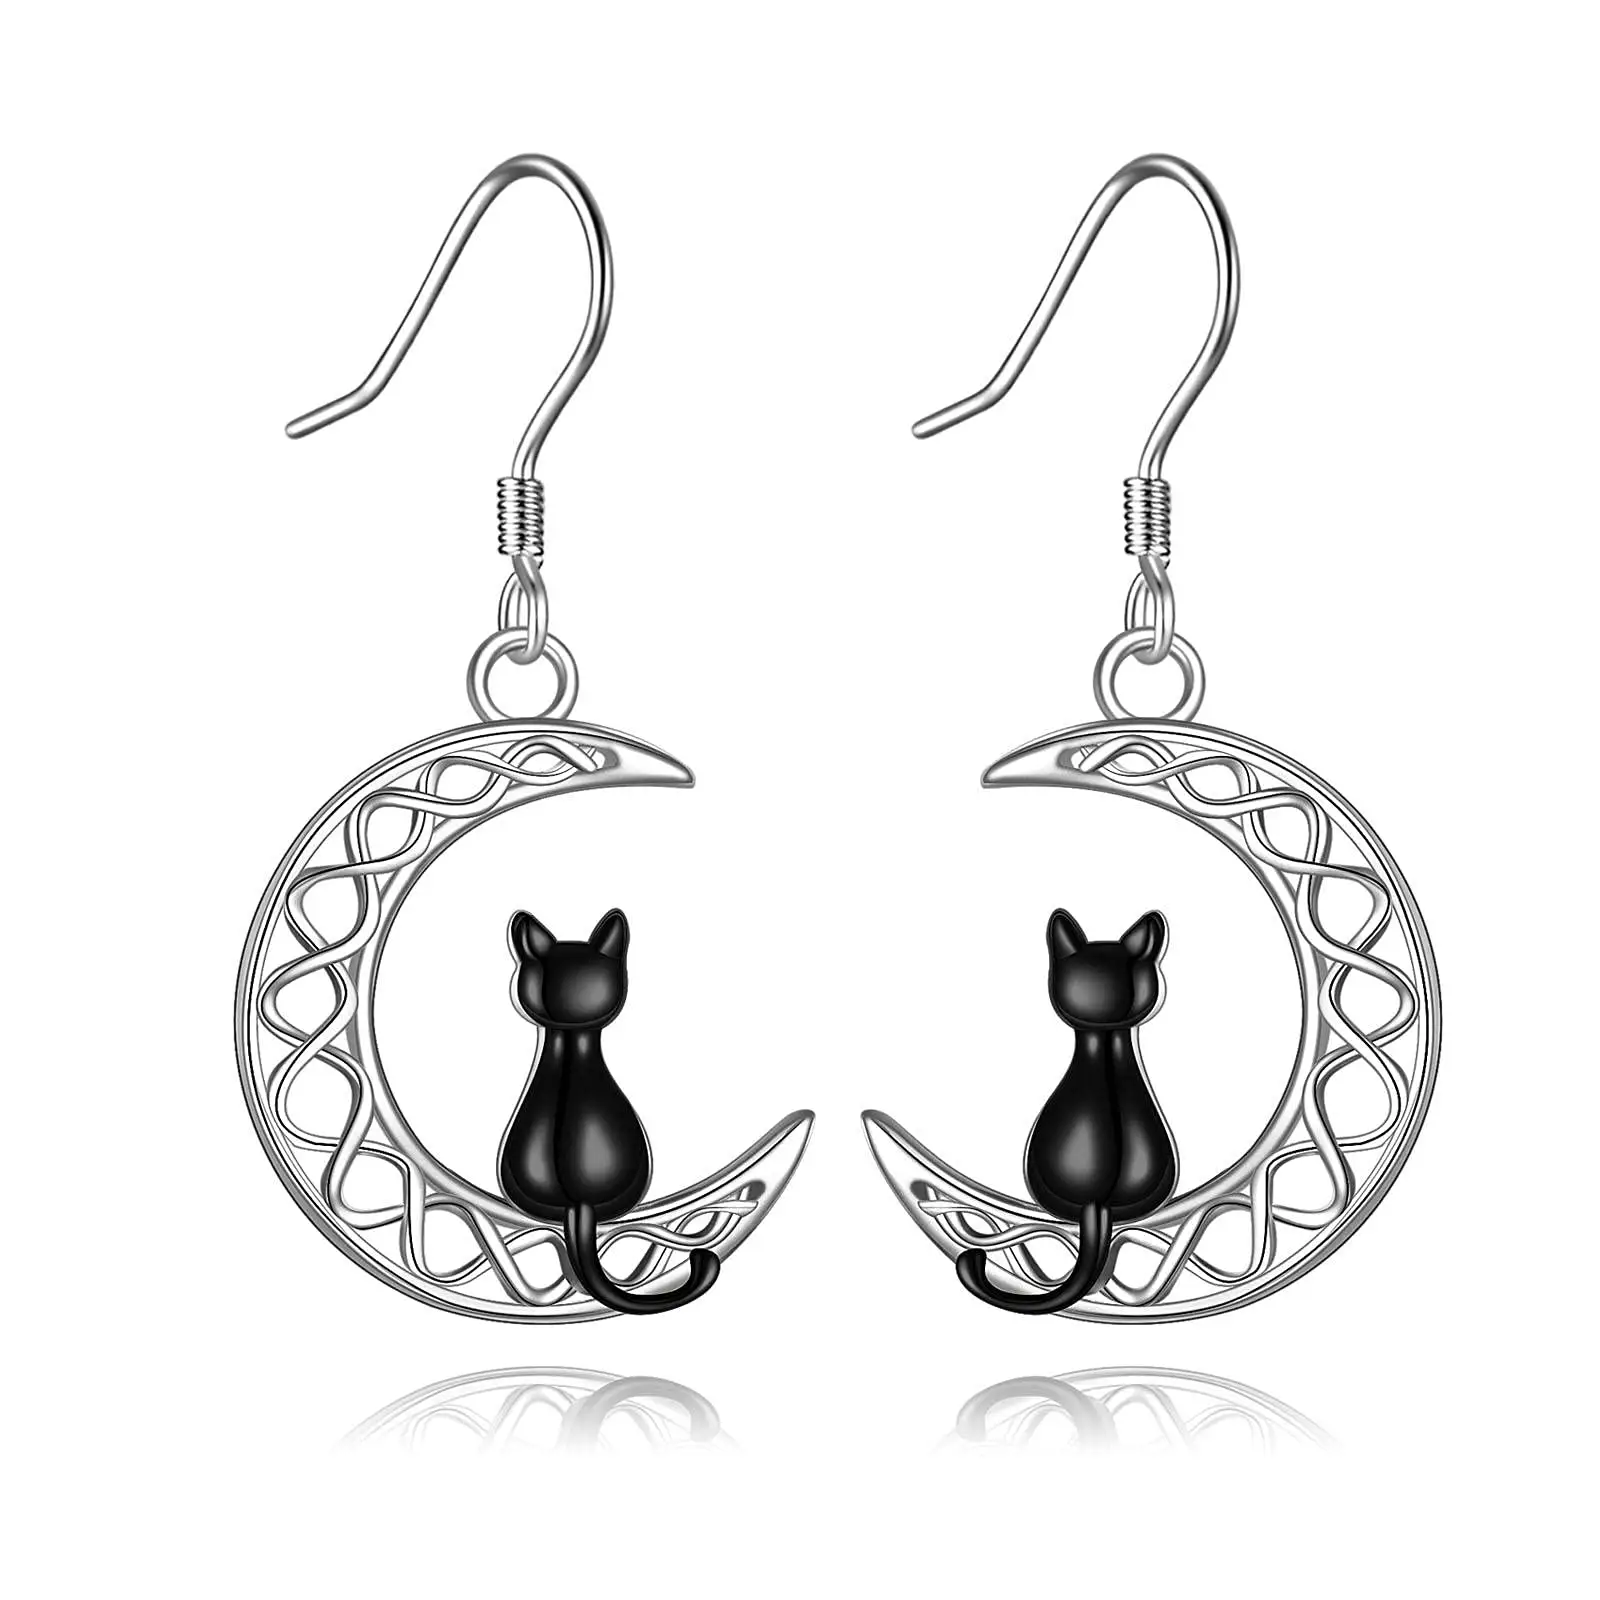 Unique Cute Jewelry 925 Sterling Silver Drop Moon Cat Hook Earrings for Women